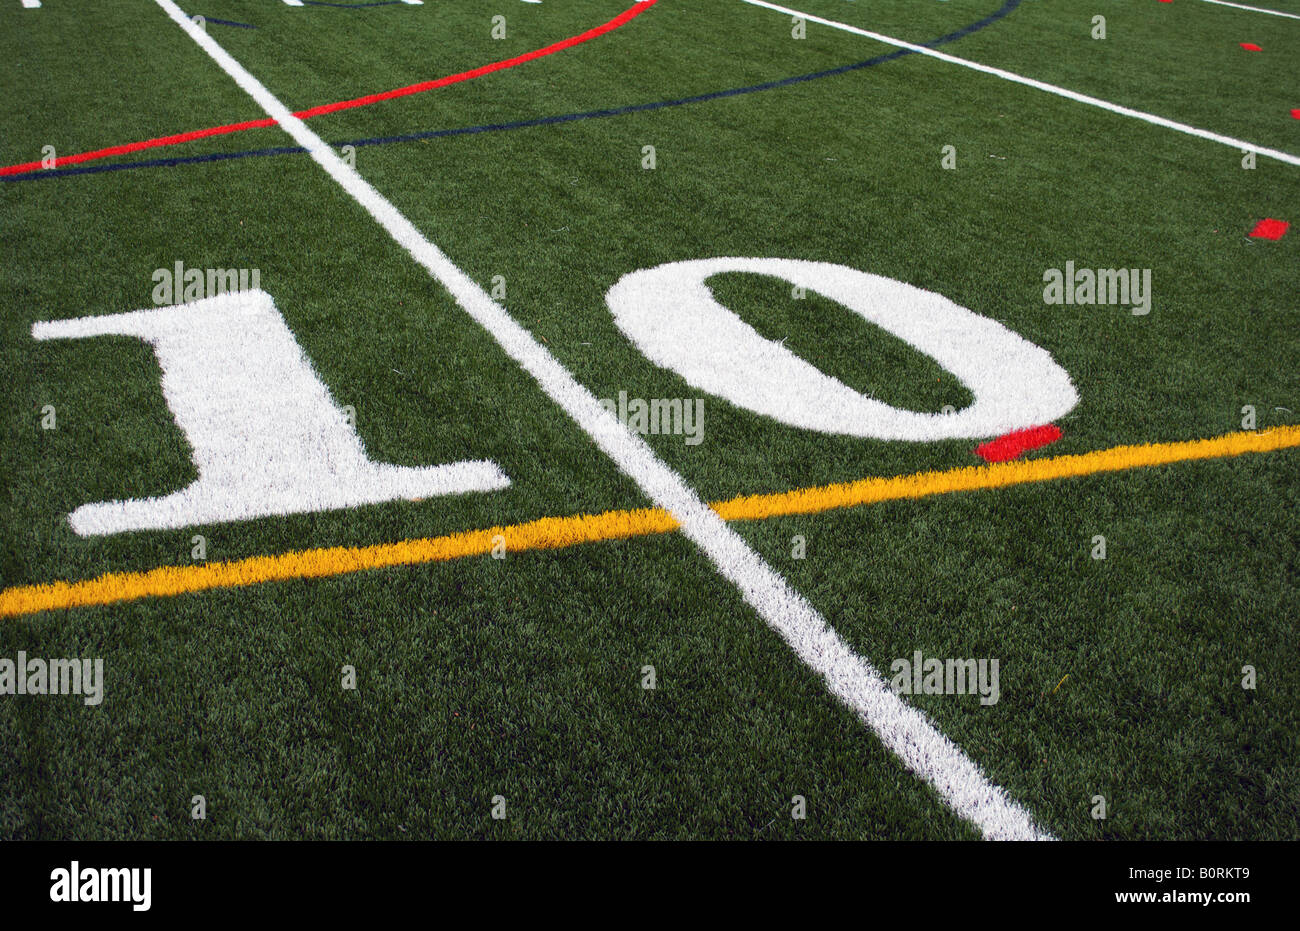 La línea de 10 yardas en el campo de fútbol Foto de stock